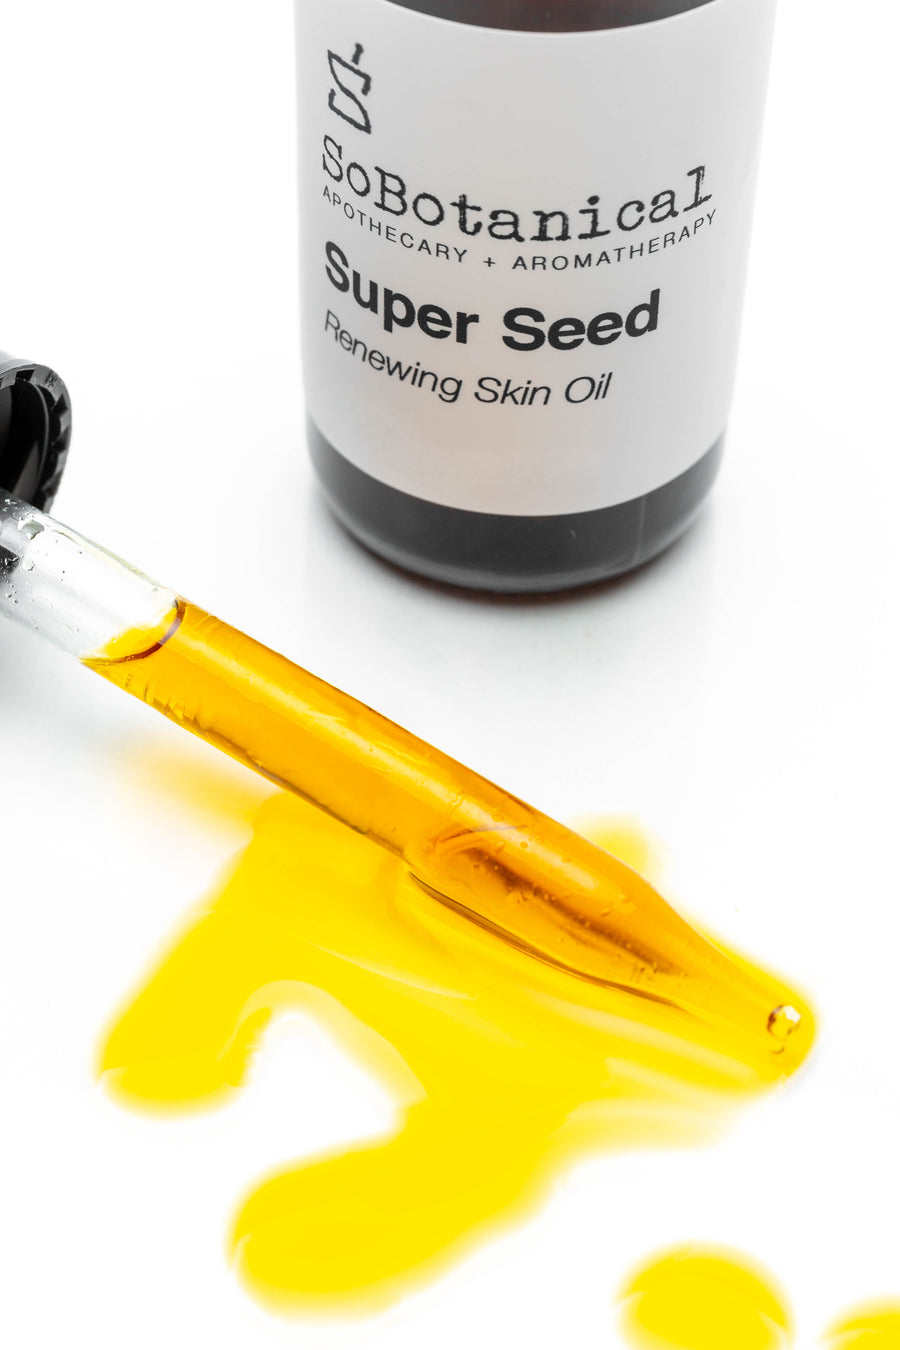 Super Seed Skin Oil